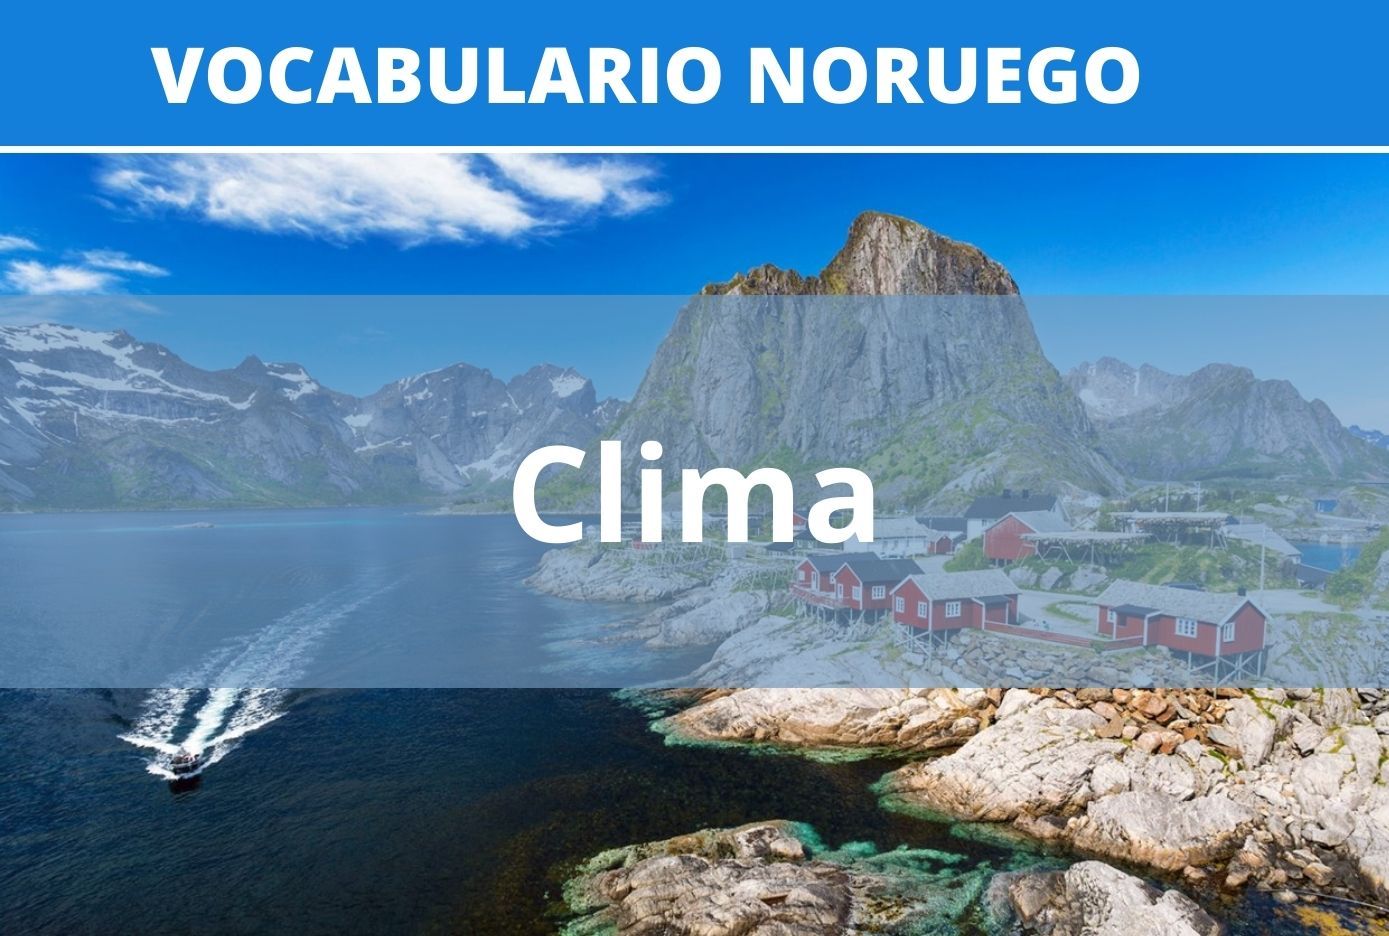 clima en noruego vocabulario